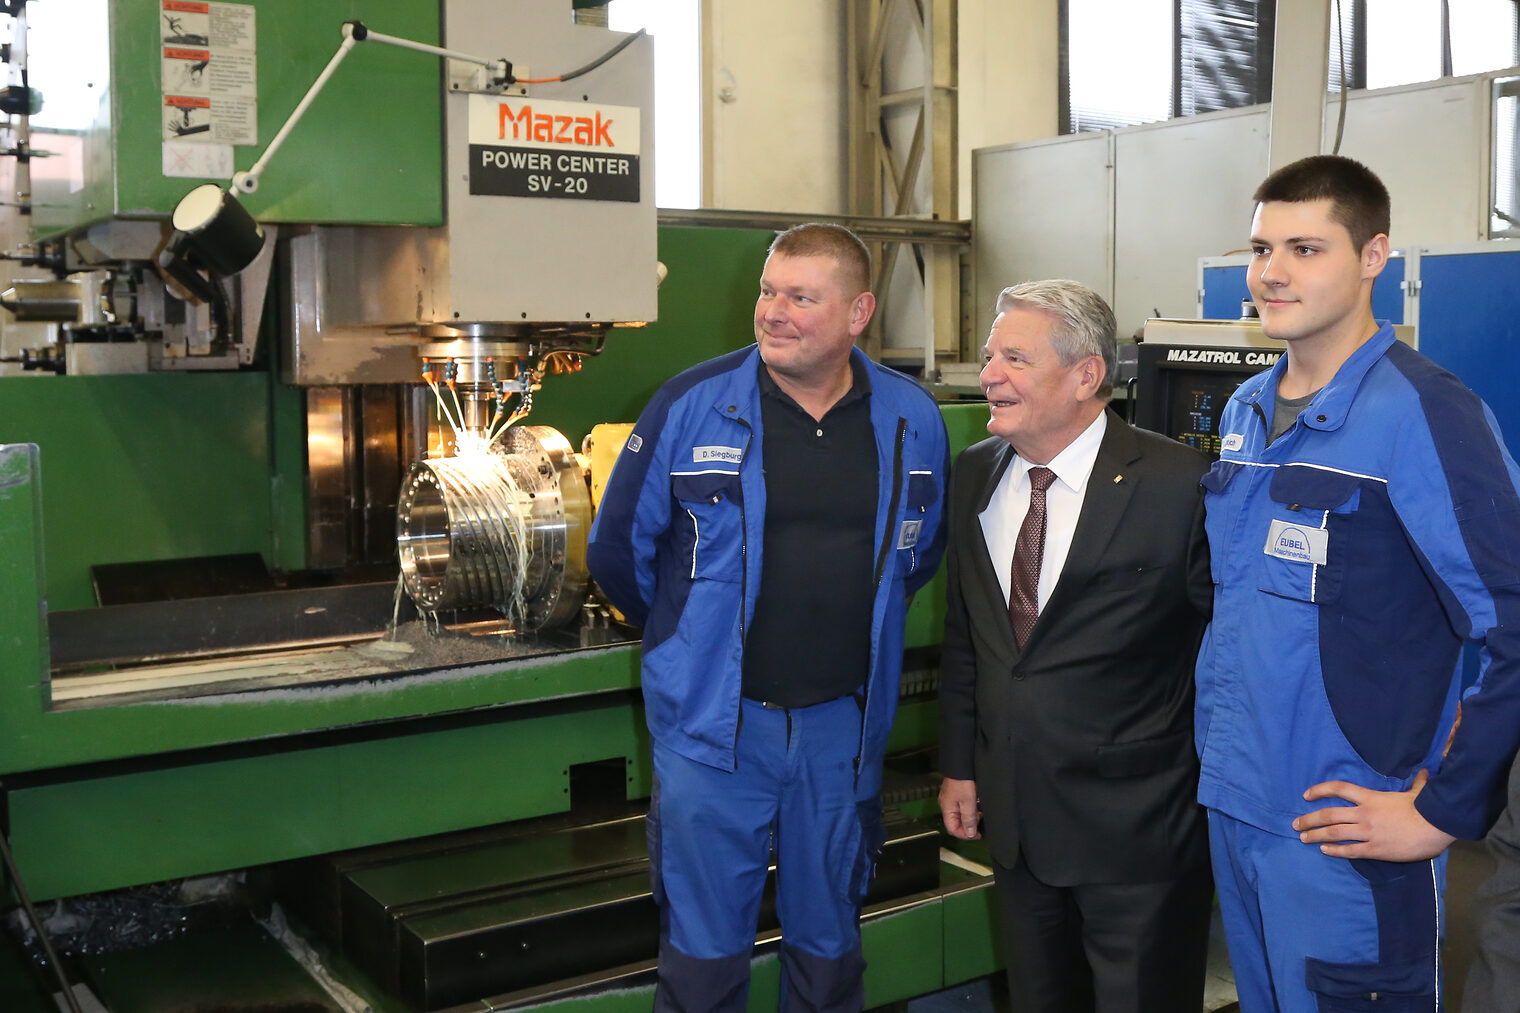 Bundespräsident Joachim Gauck besucht das Handwerk 3